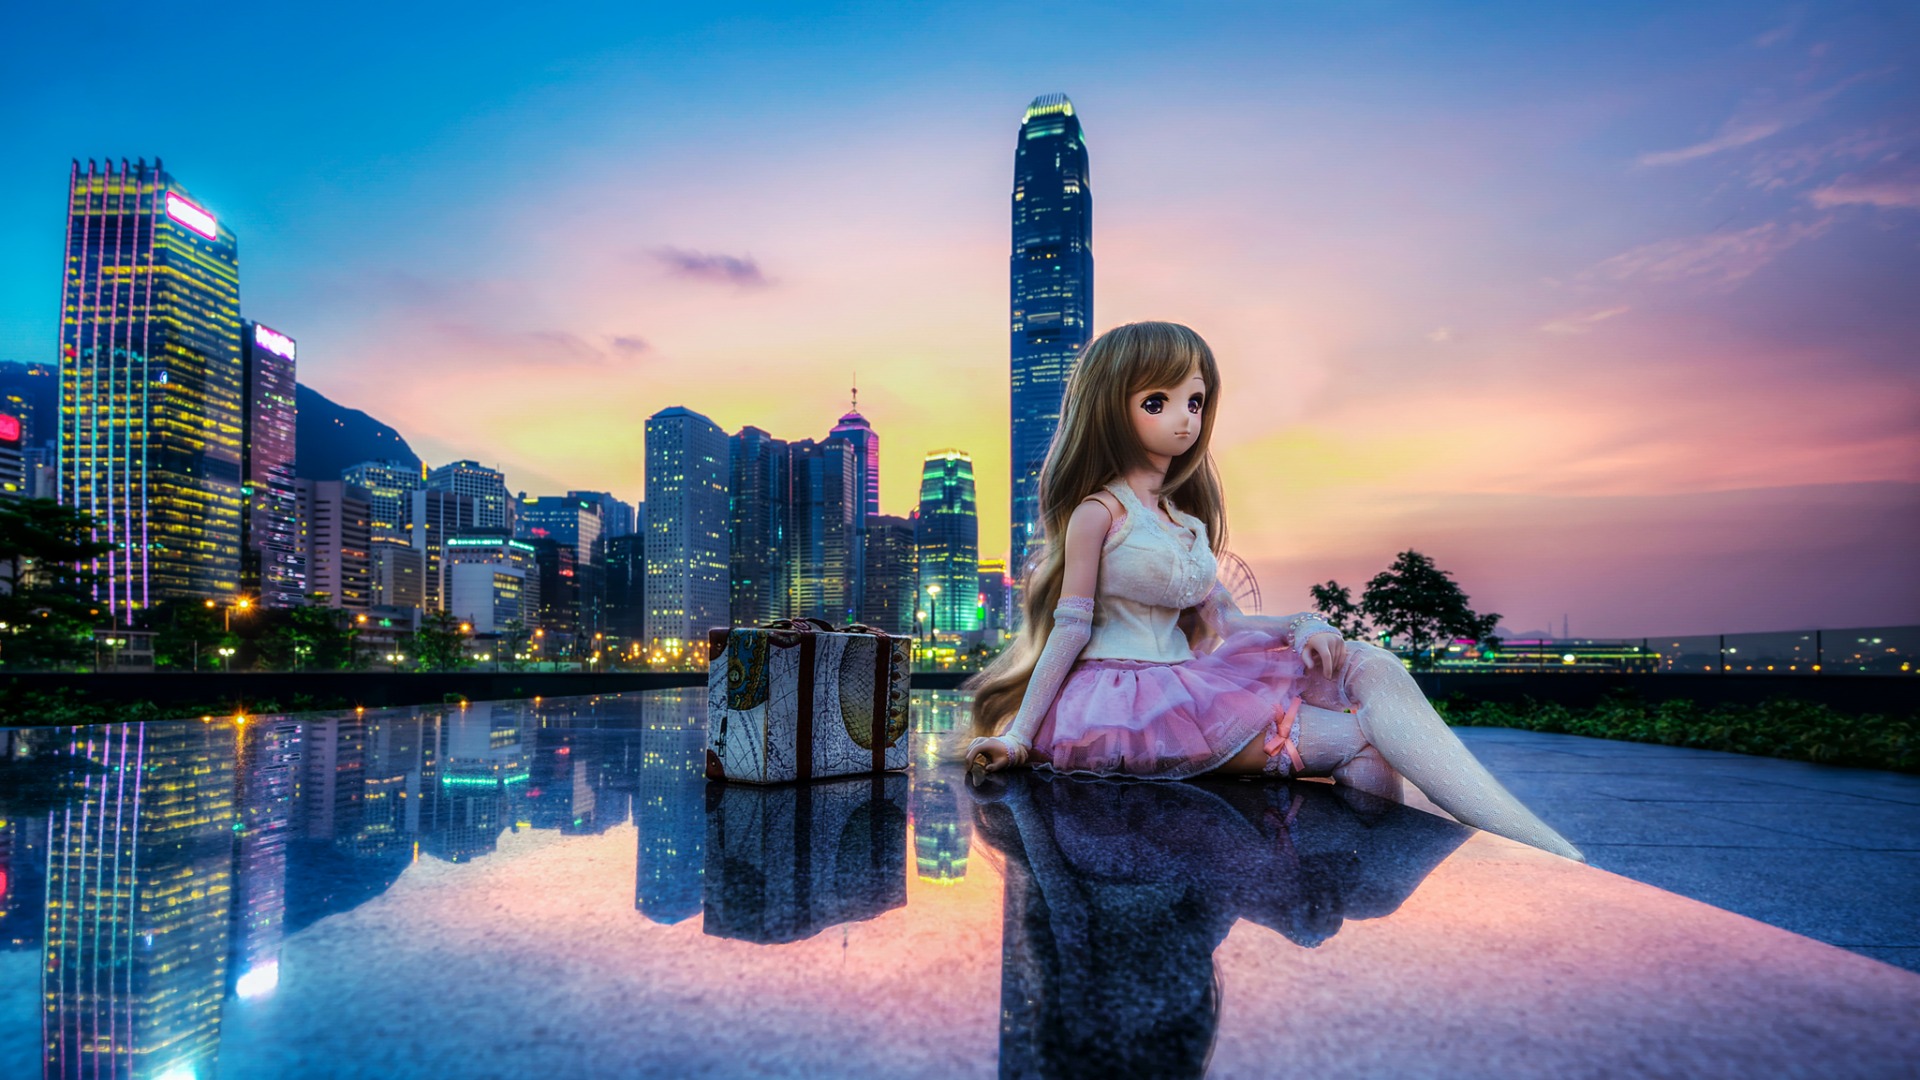 添马舰公园,金钟,香港,可爱芭比娃娃,壁纸